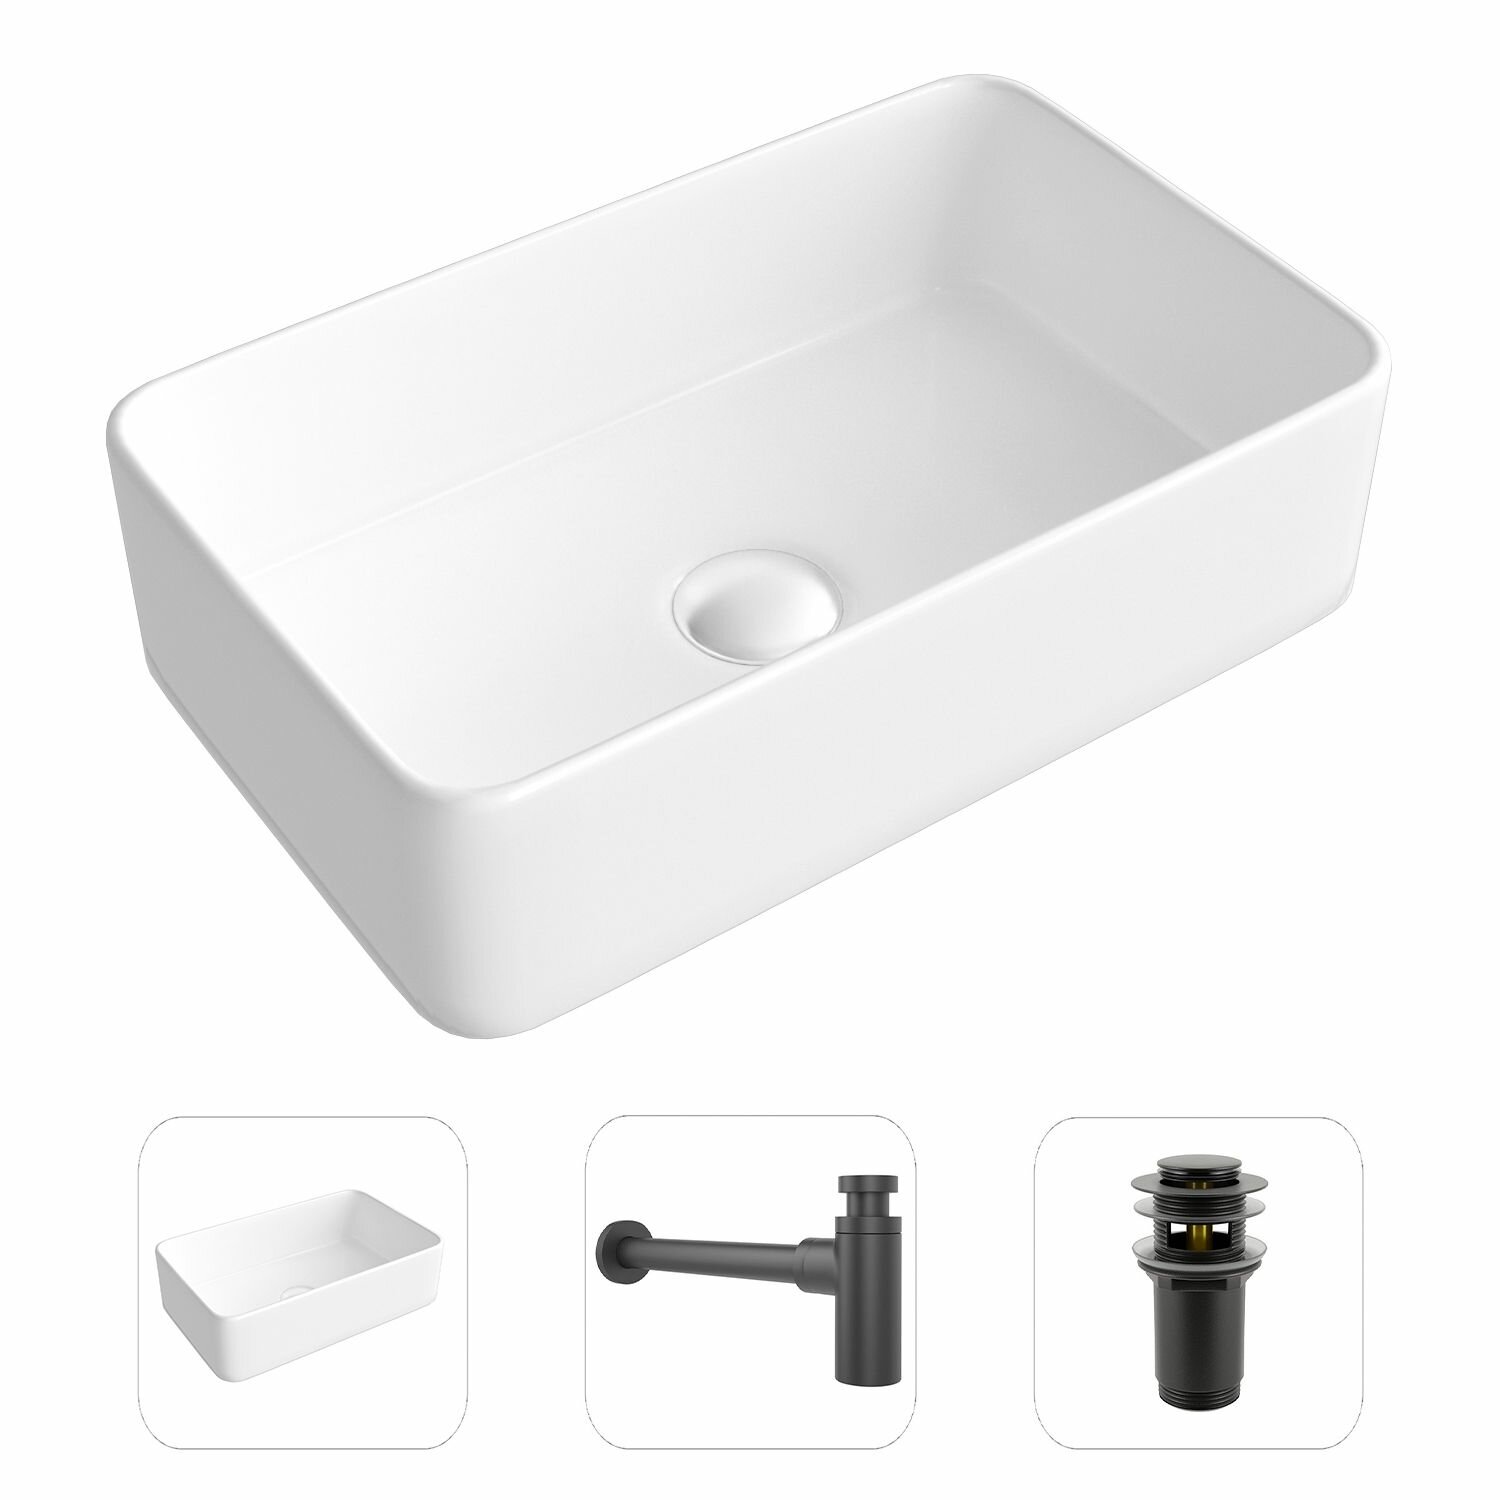 Накладная раковина в ванную Helmken 67448000 комплект 3 в 1: умывальник прямоугольный 48 см, сифон и донный клапан click-clack в цвете черный